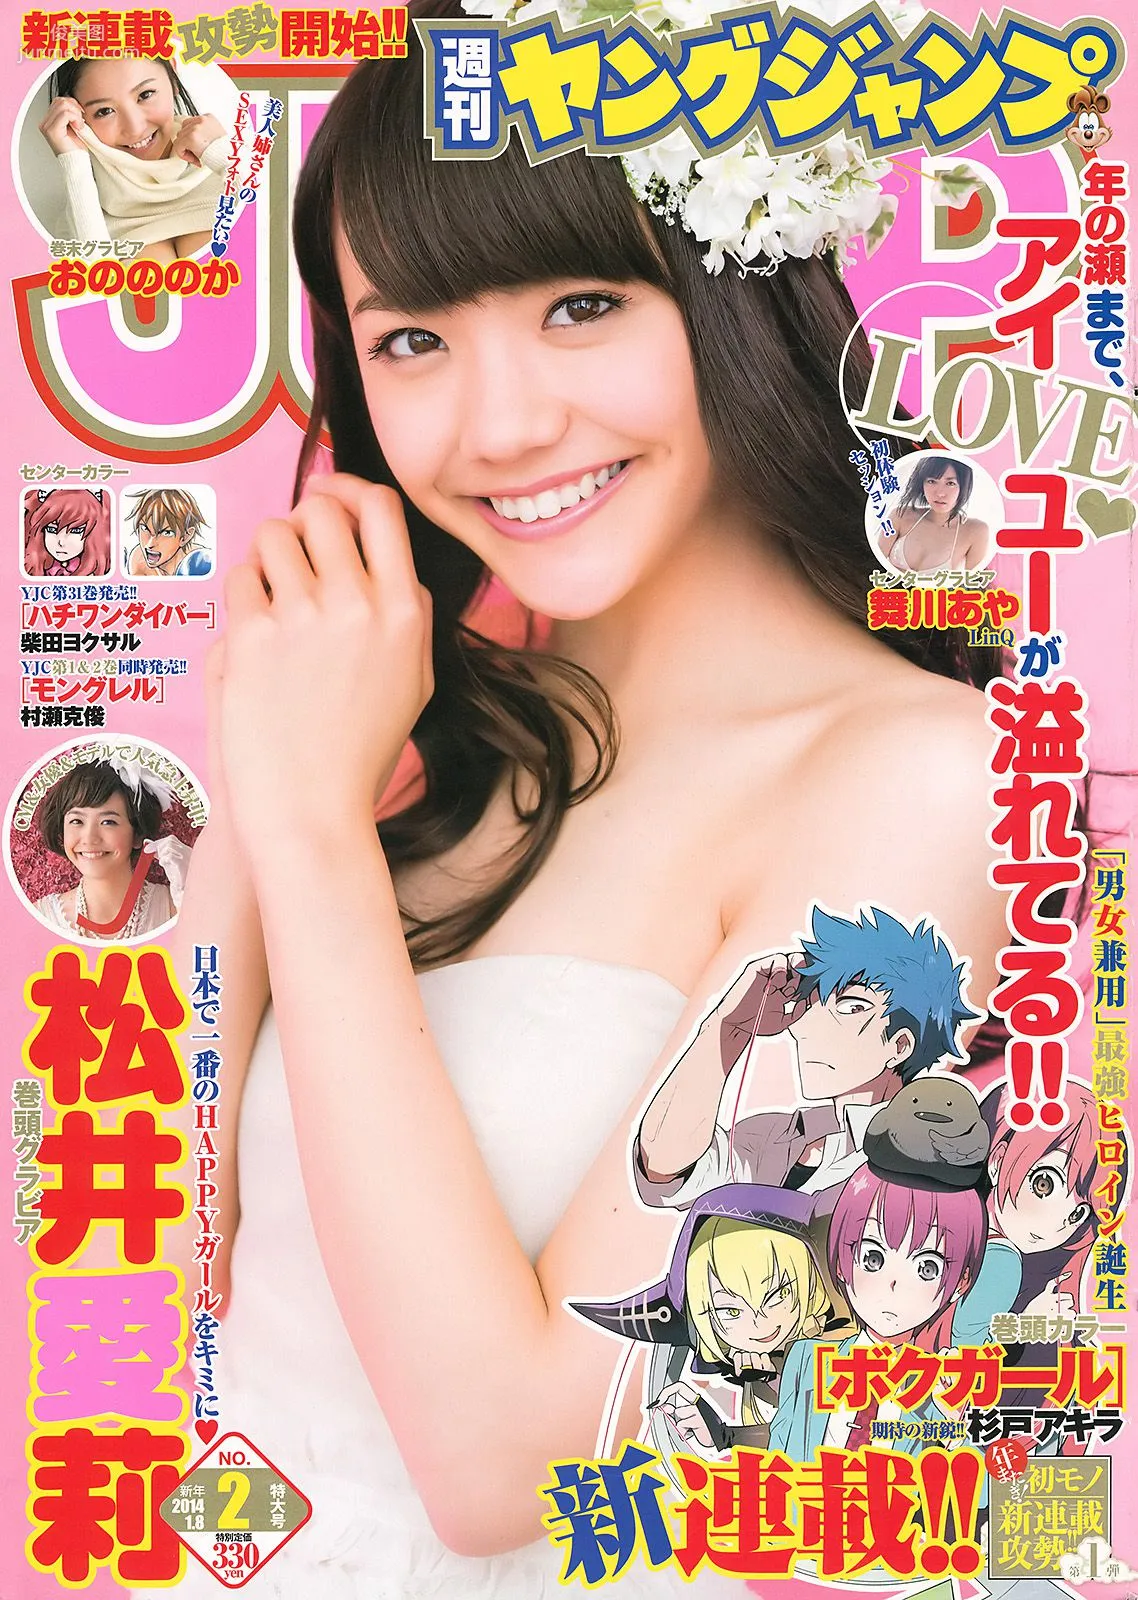 松井愛莉 舞川あや おのののか [Weekly Young Jump] 2014年No.02 写真杂志1